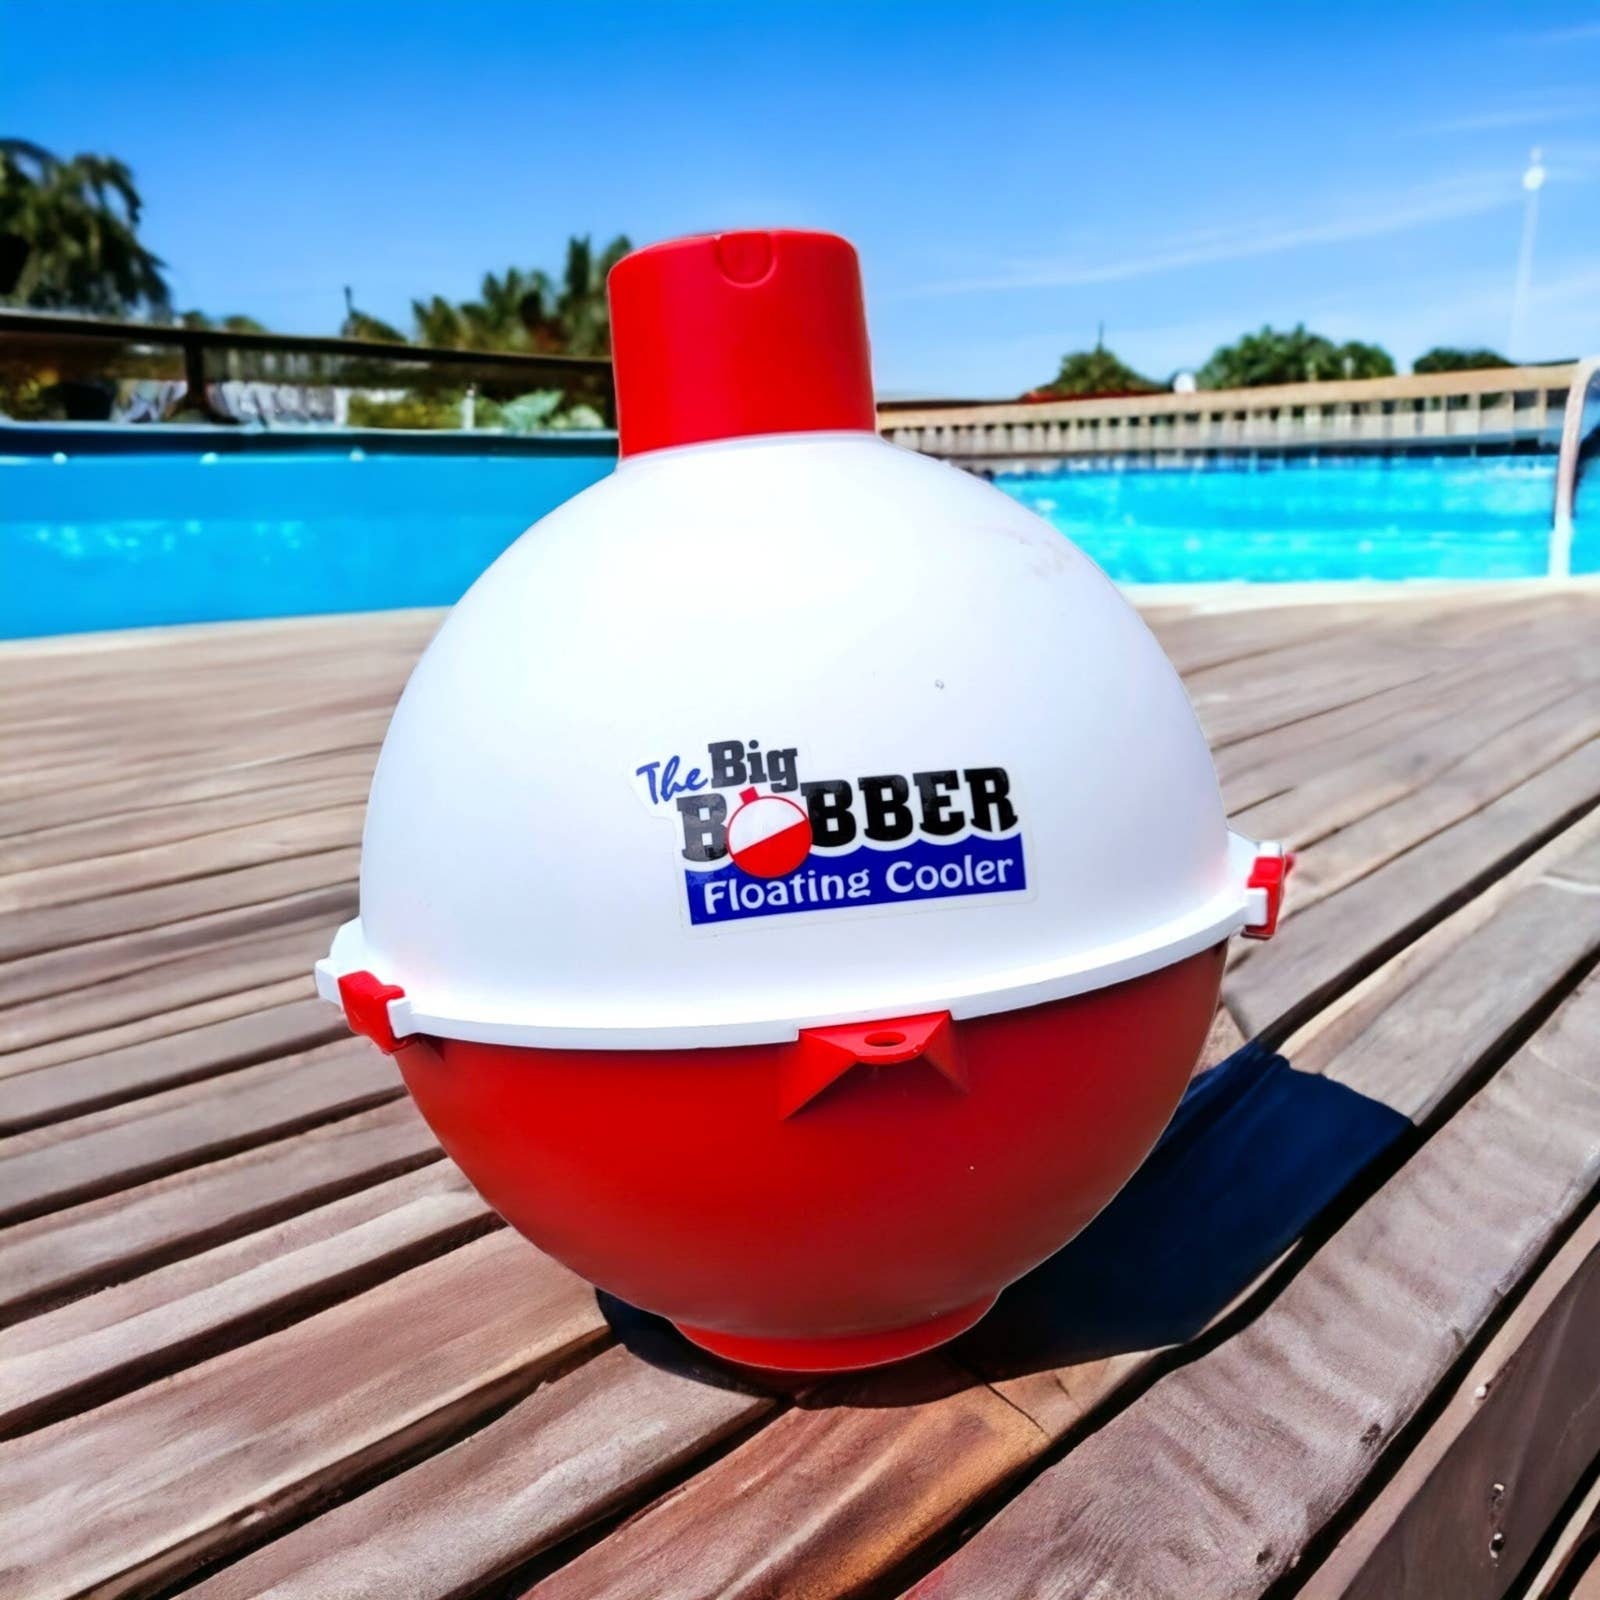 The Big Bobber Floating Cooler 12 Pack Capacity 